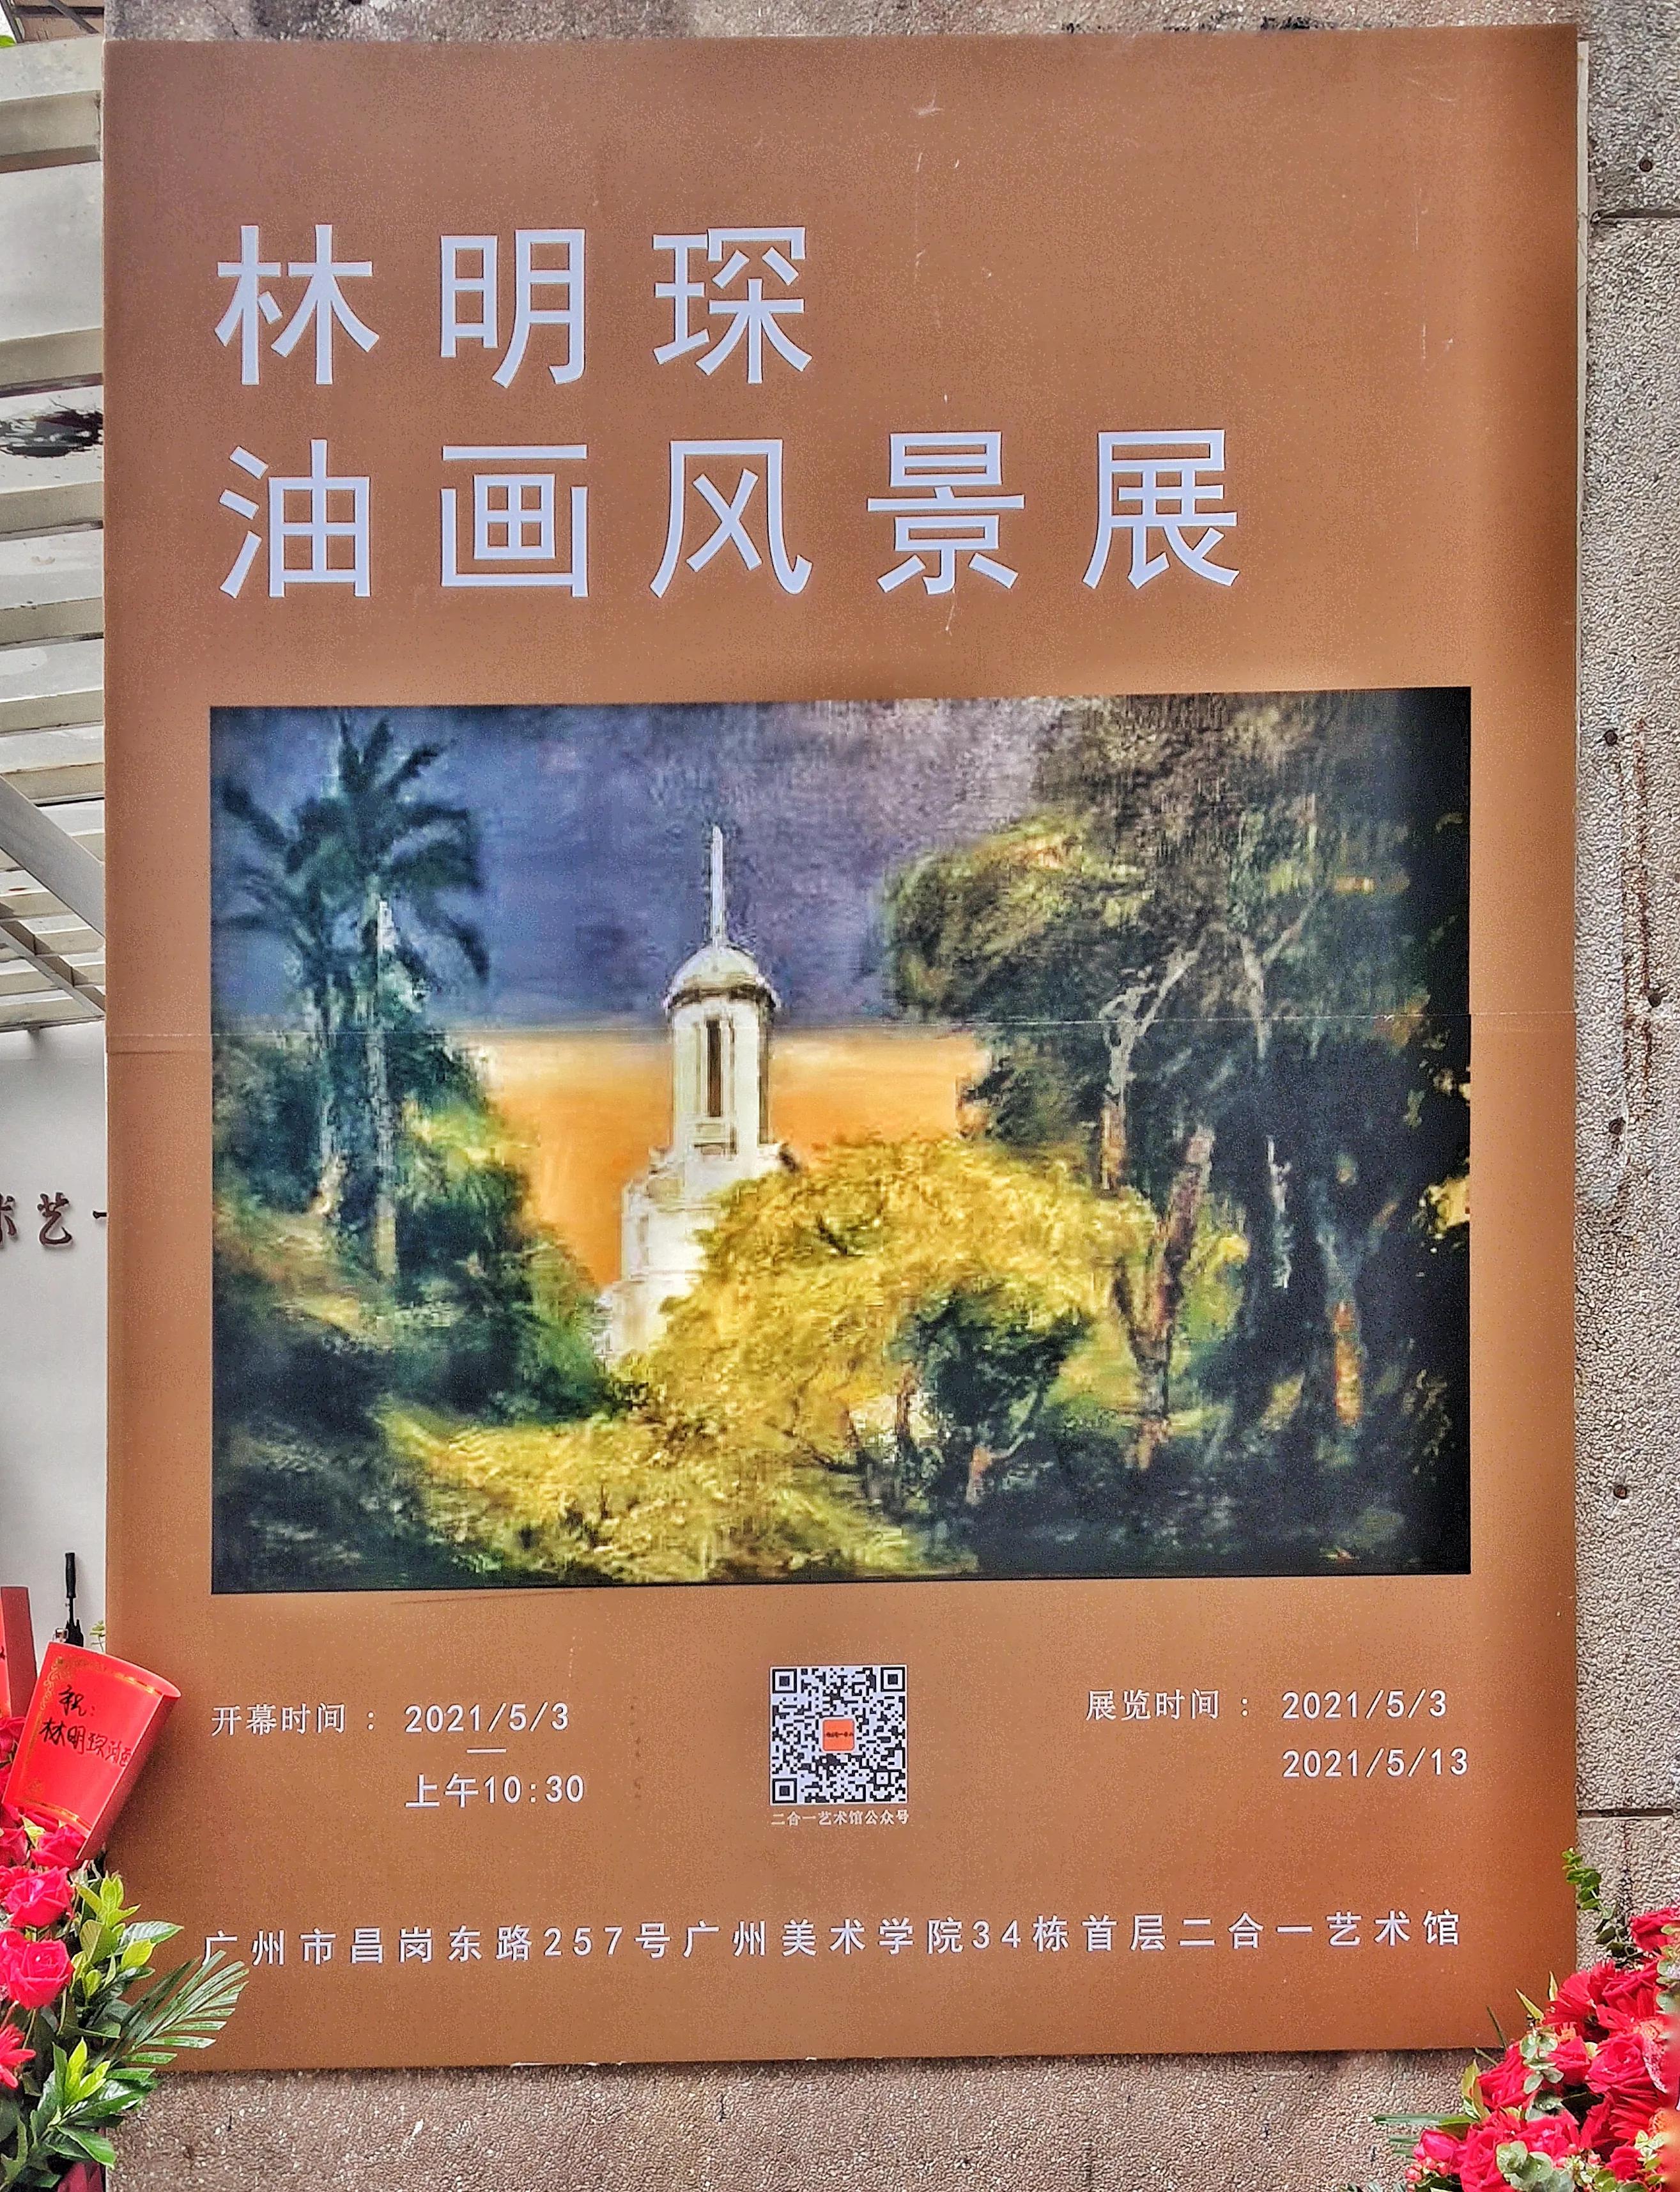 林明琛油畫風景展21年5月3日 盧丹在廣州 Mdeditor